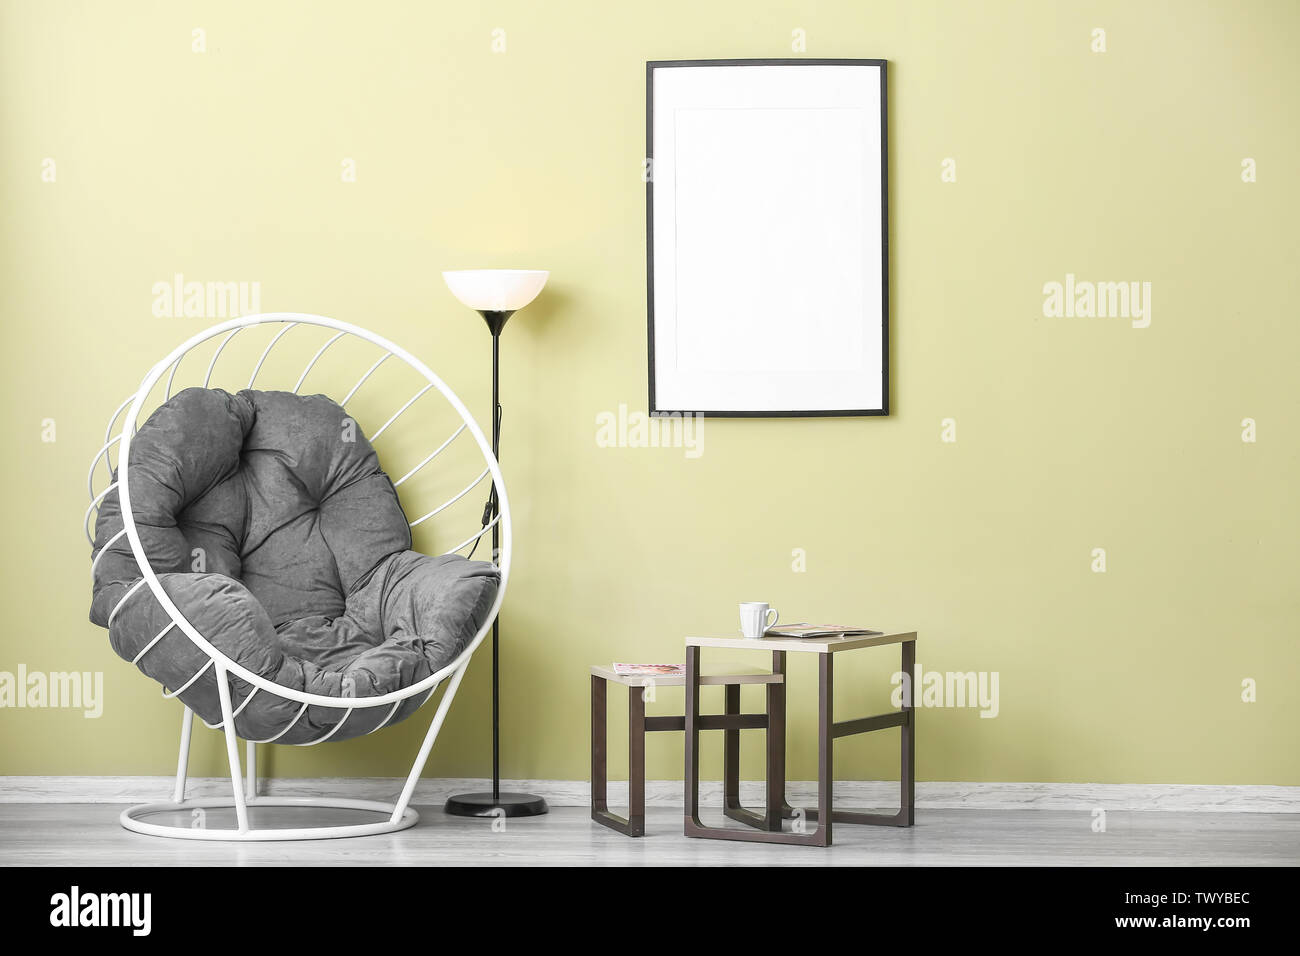 Komfortable Sessel Und Tische In Der Nahe Der Farbe Wand Stockfotografie Alamy